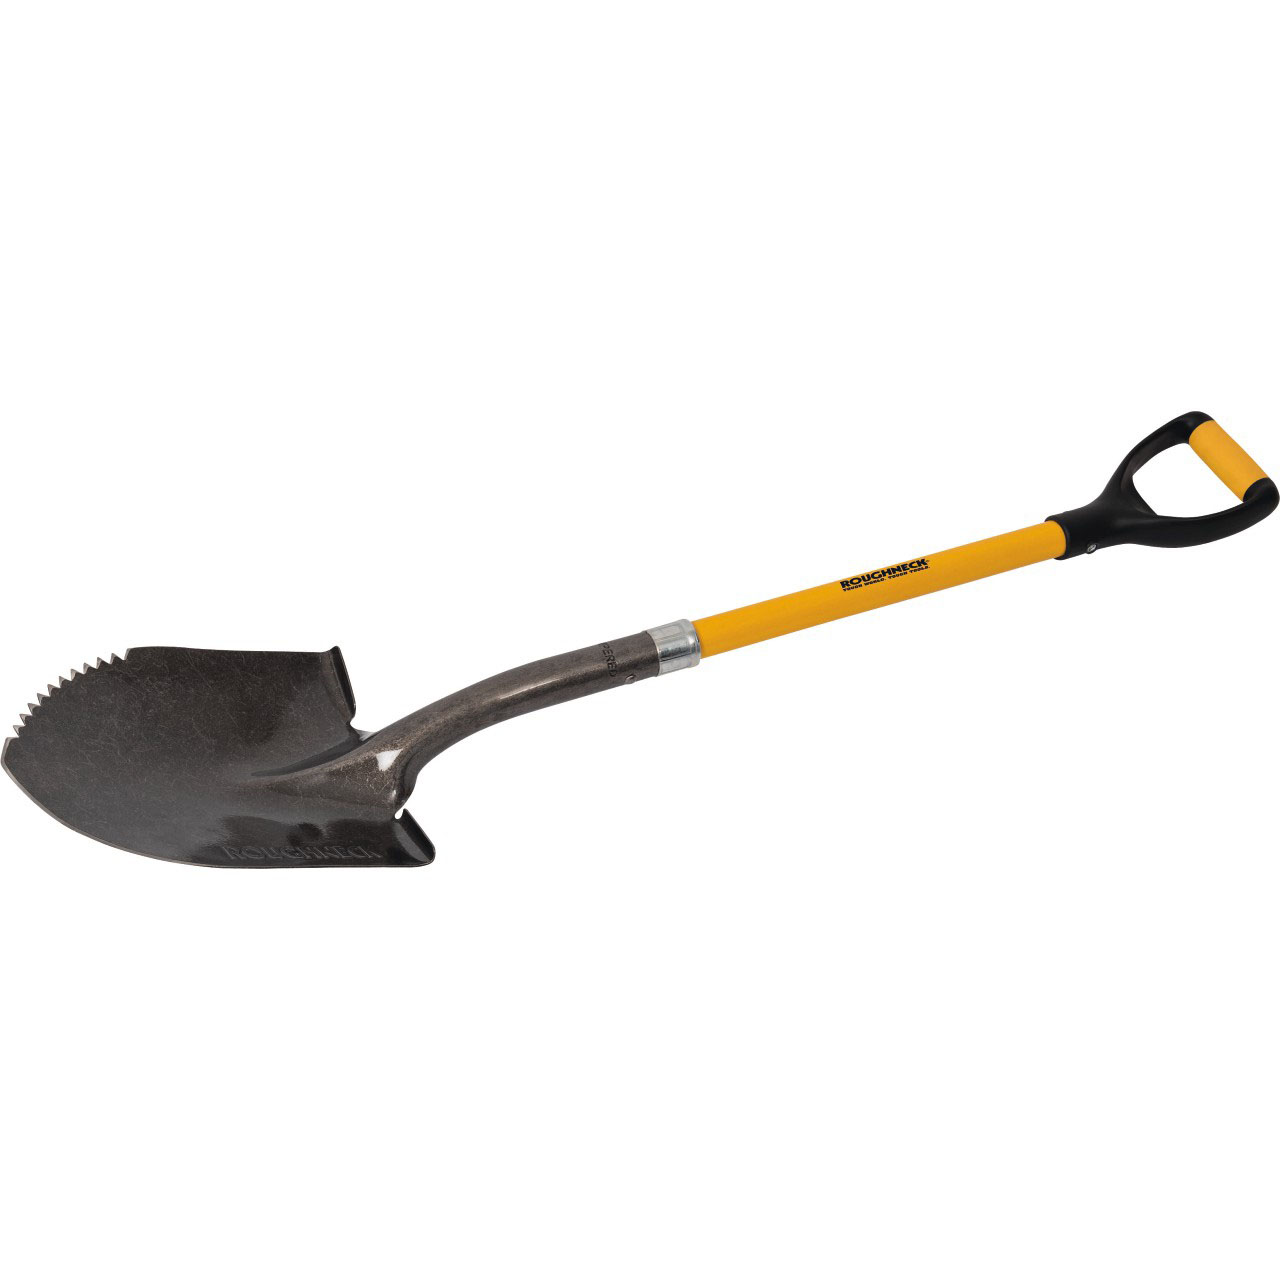 Sharp-Edge Shovel